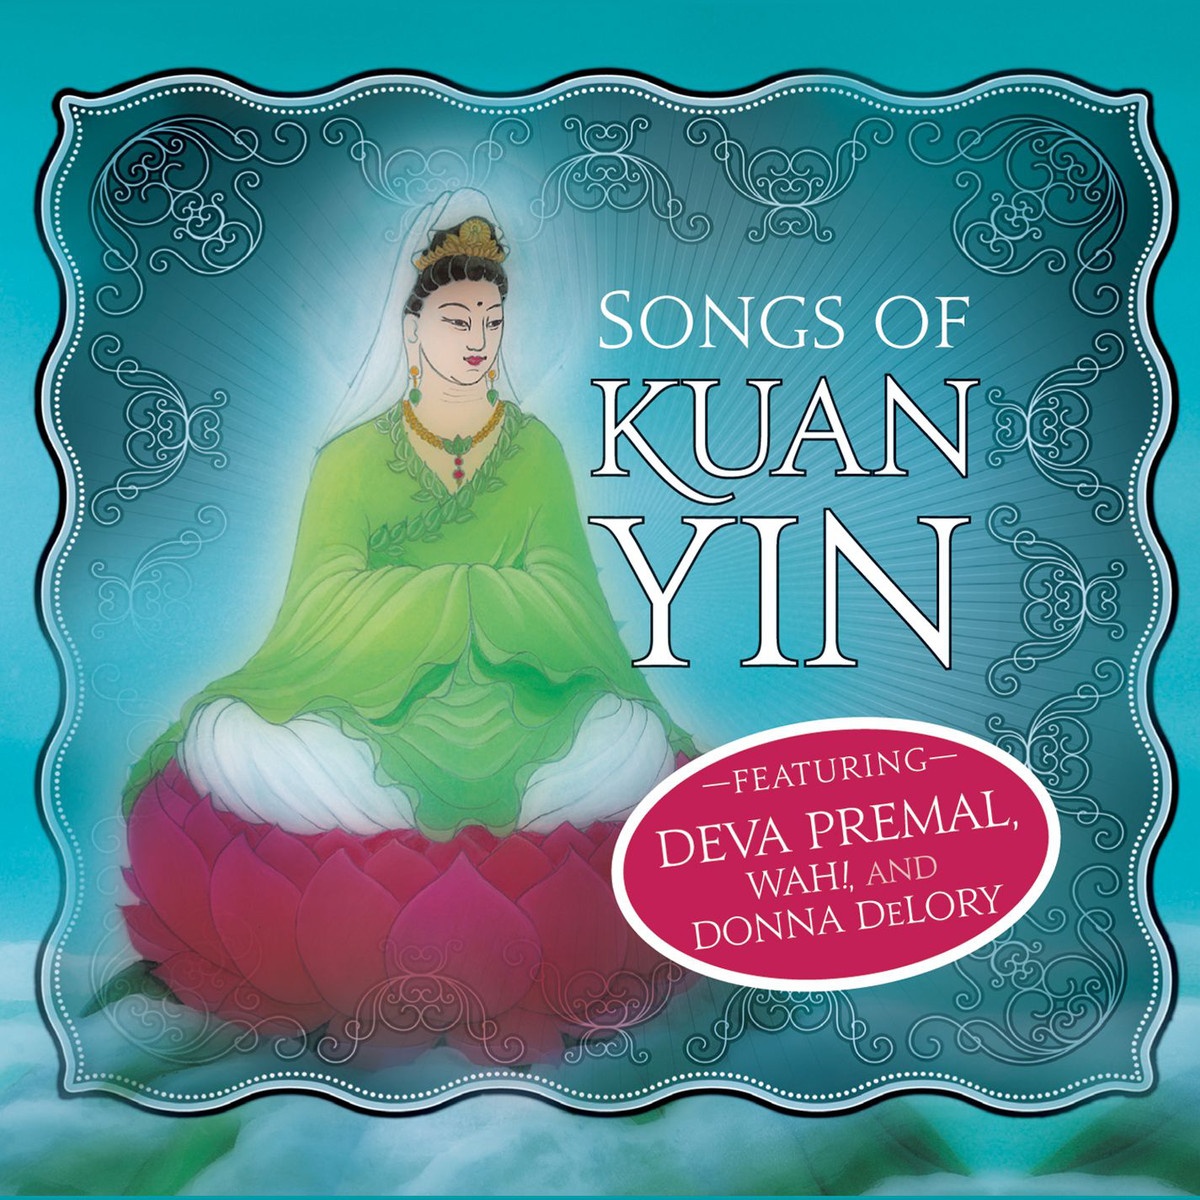 Prayer to Kuan Yin